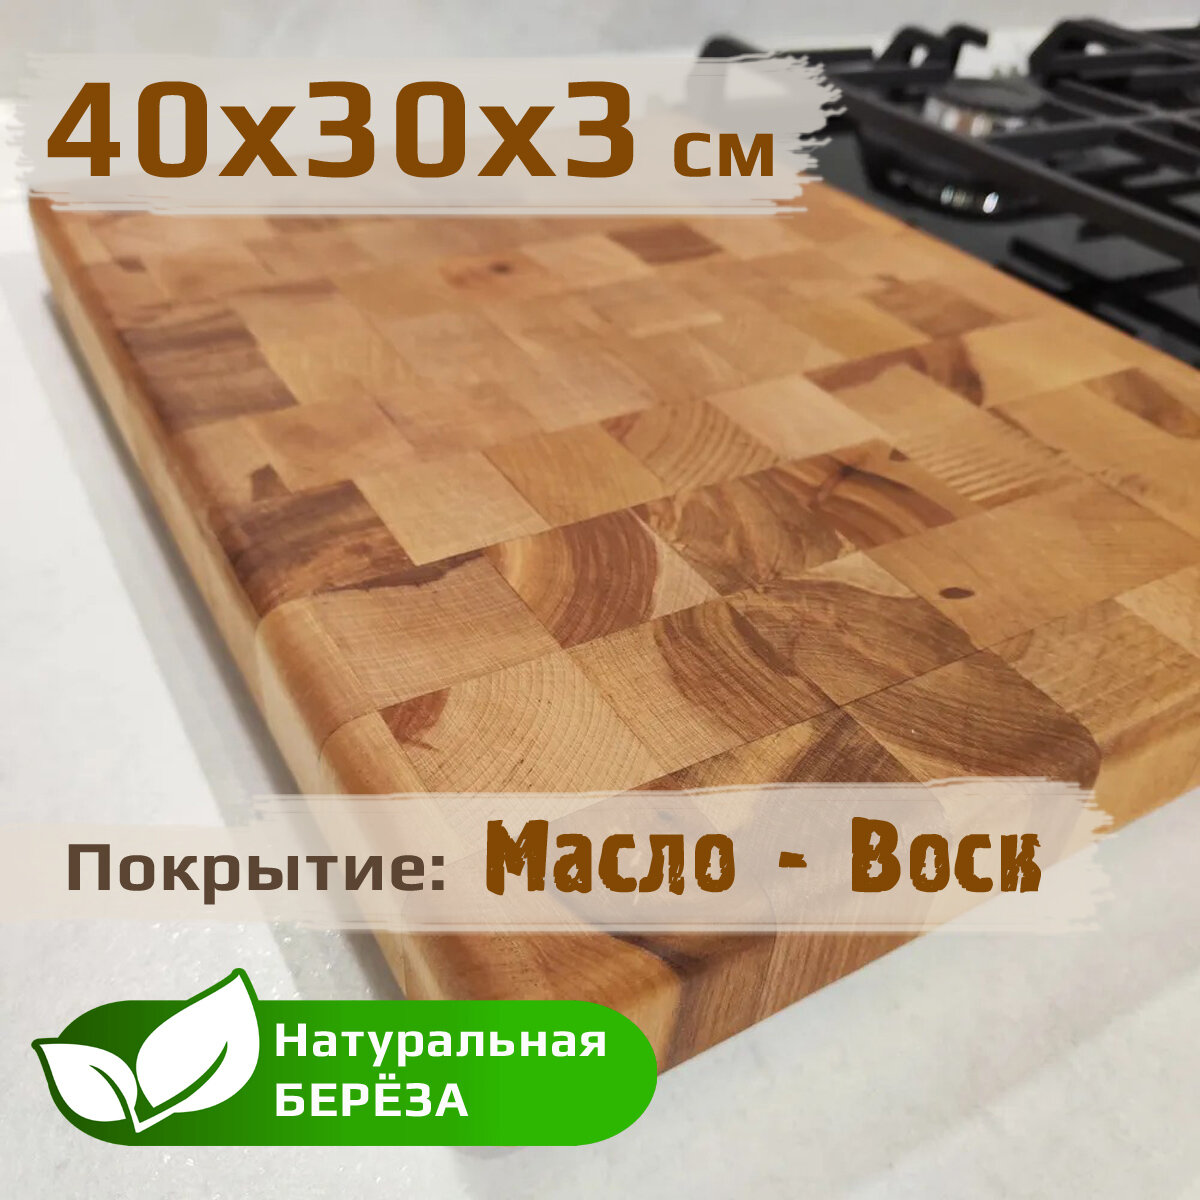 Доска разделочная деревянная торцевая из березы, 40х30х3 см.